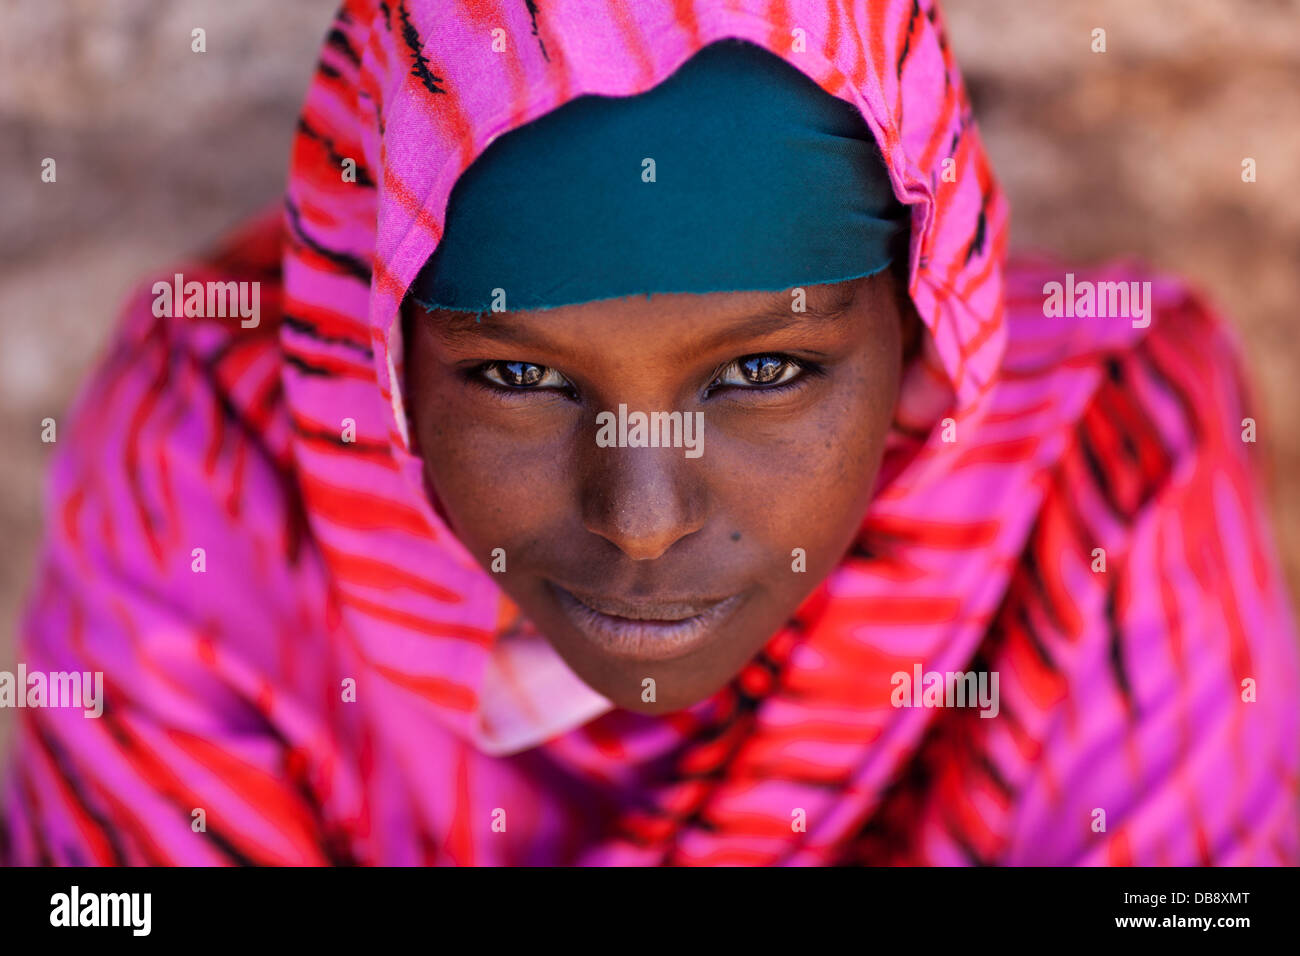 Una ragazza somala pone per la prima immagine della sua vita. Ella vive in un piccolo villaggio situato sul confine con l Etiopia. Foto Stock